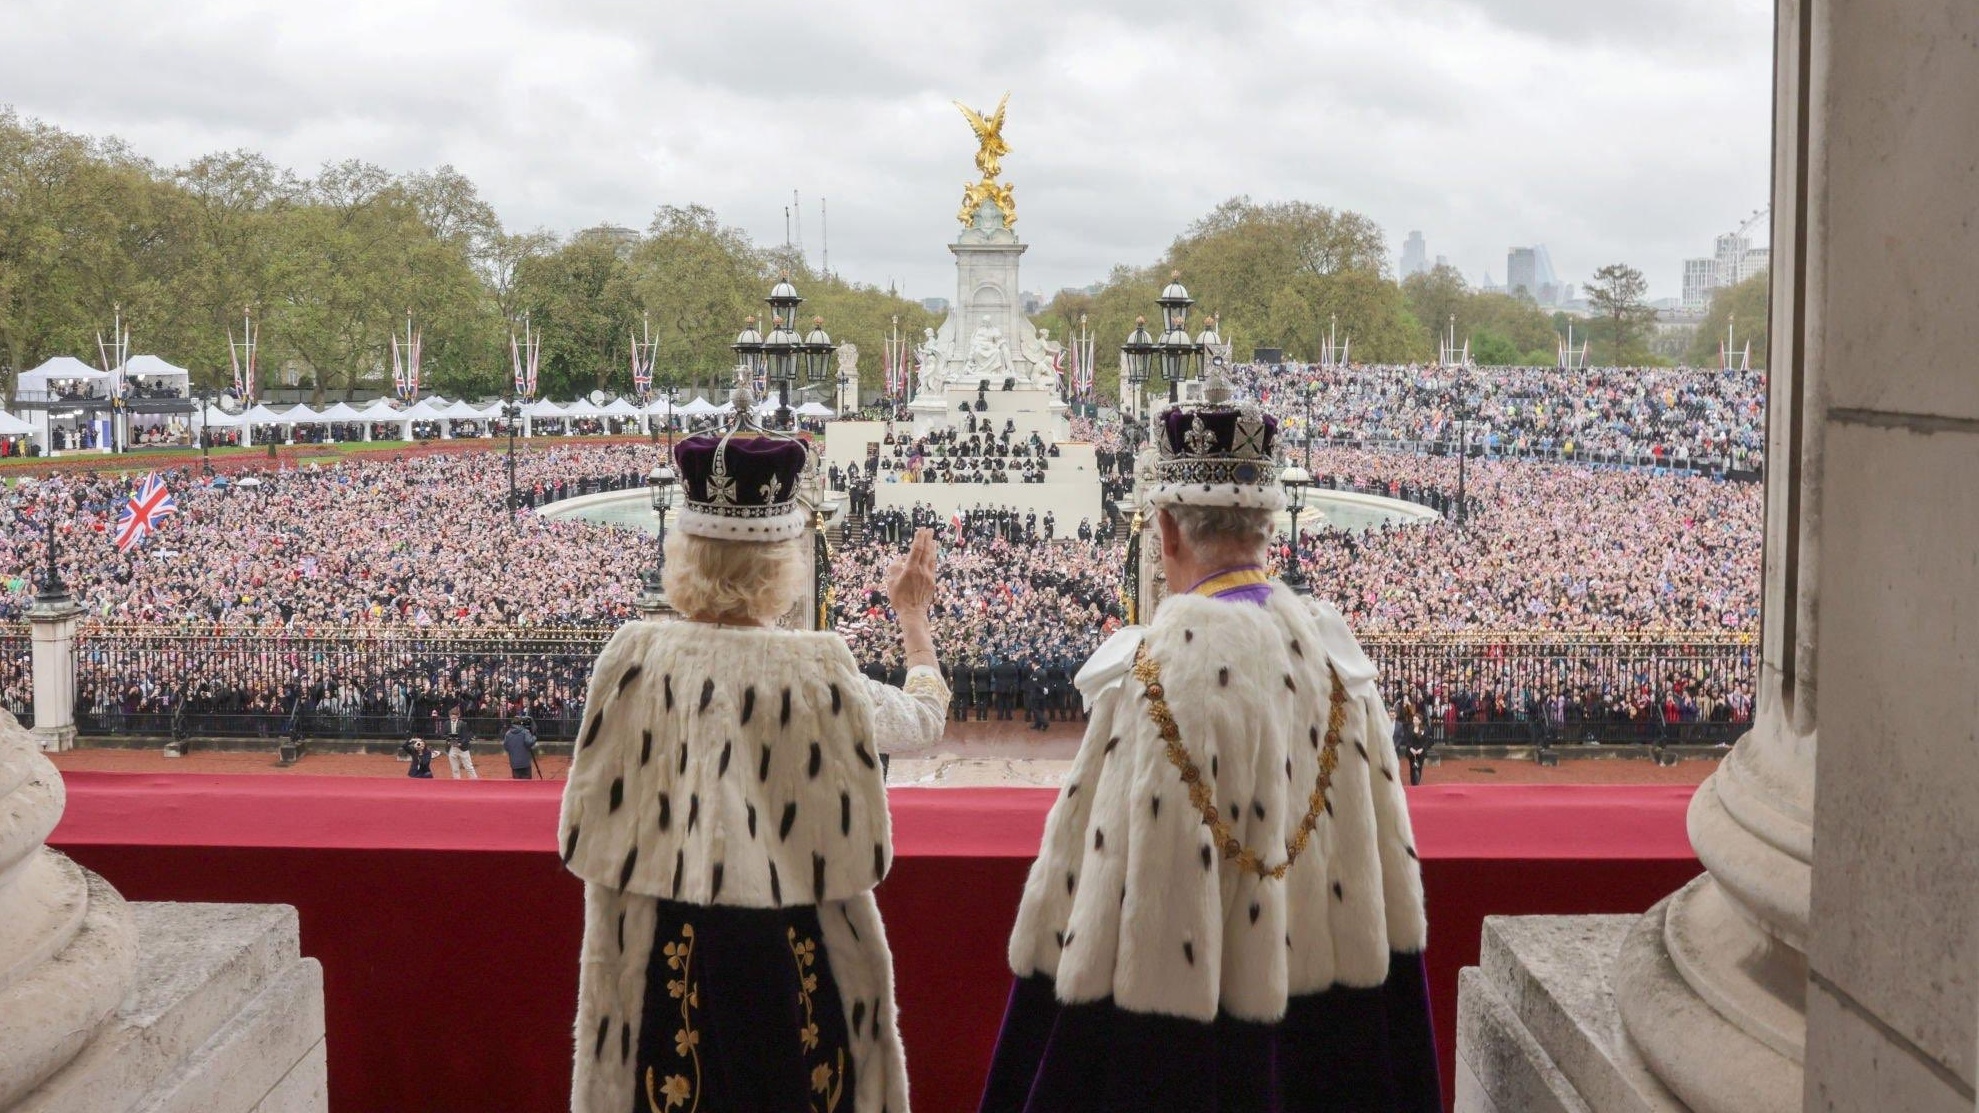 Kuningas Charlesin ja kuningatar Camillan historiallisten kruunajaisten kohokohdat muistetaan vielä pitkään. Kuvassa kuningaspari näyttäytyy Buckinghamin palatsin parvekkeella.